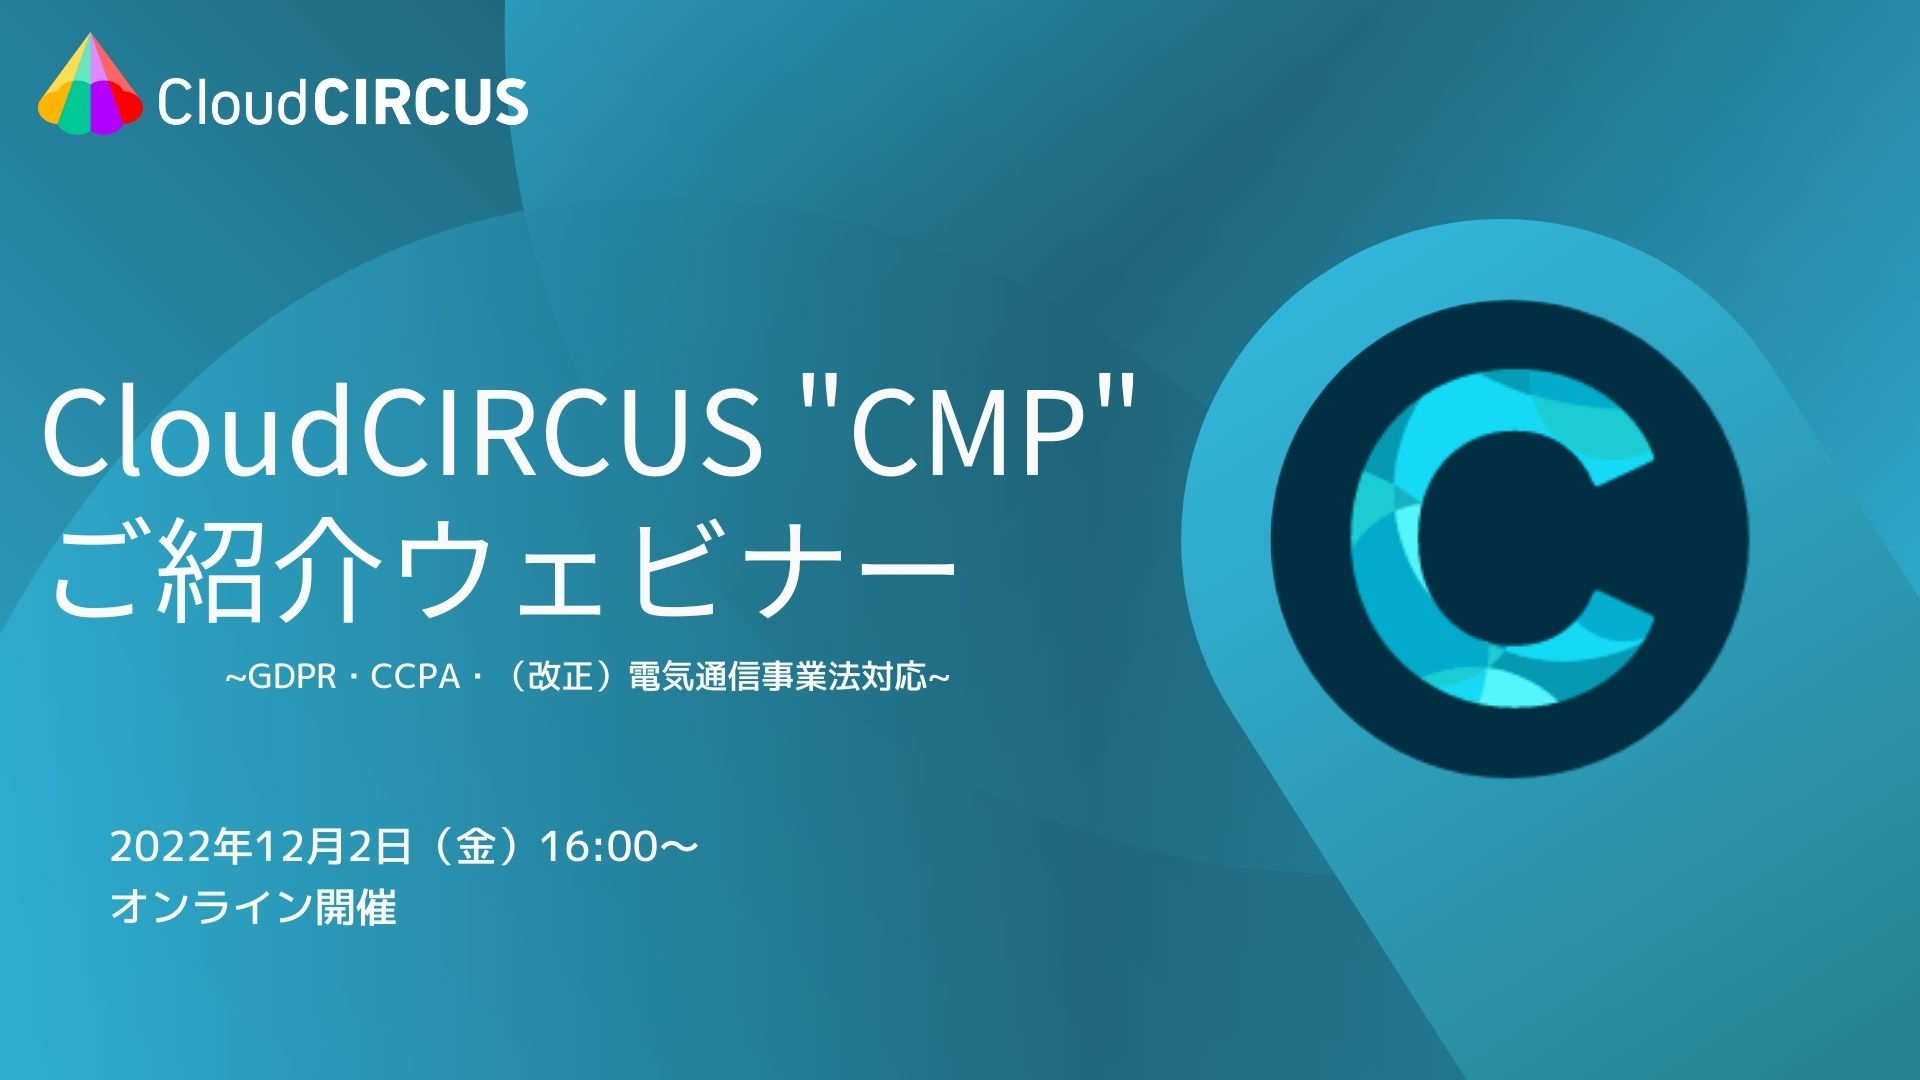 【12/2(金)】Cookie規制対応の同意管理ツール「CloudCIRCUS CMP」ご紹介ウェブセミナー